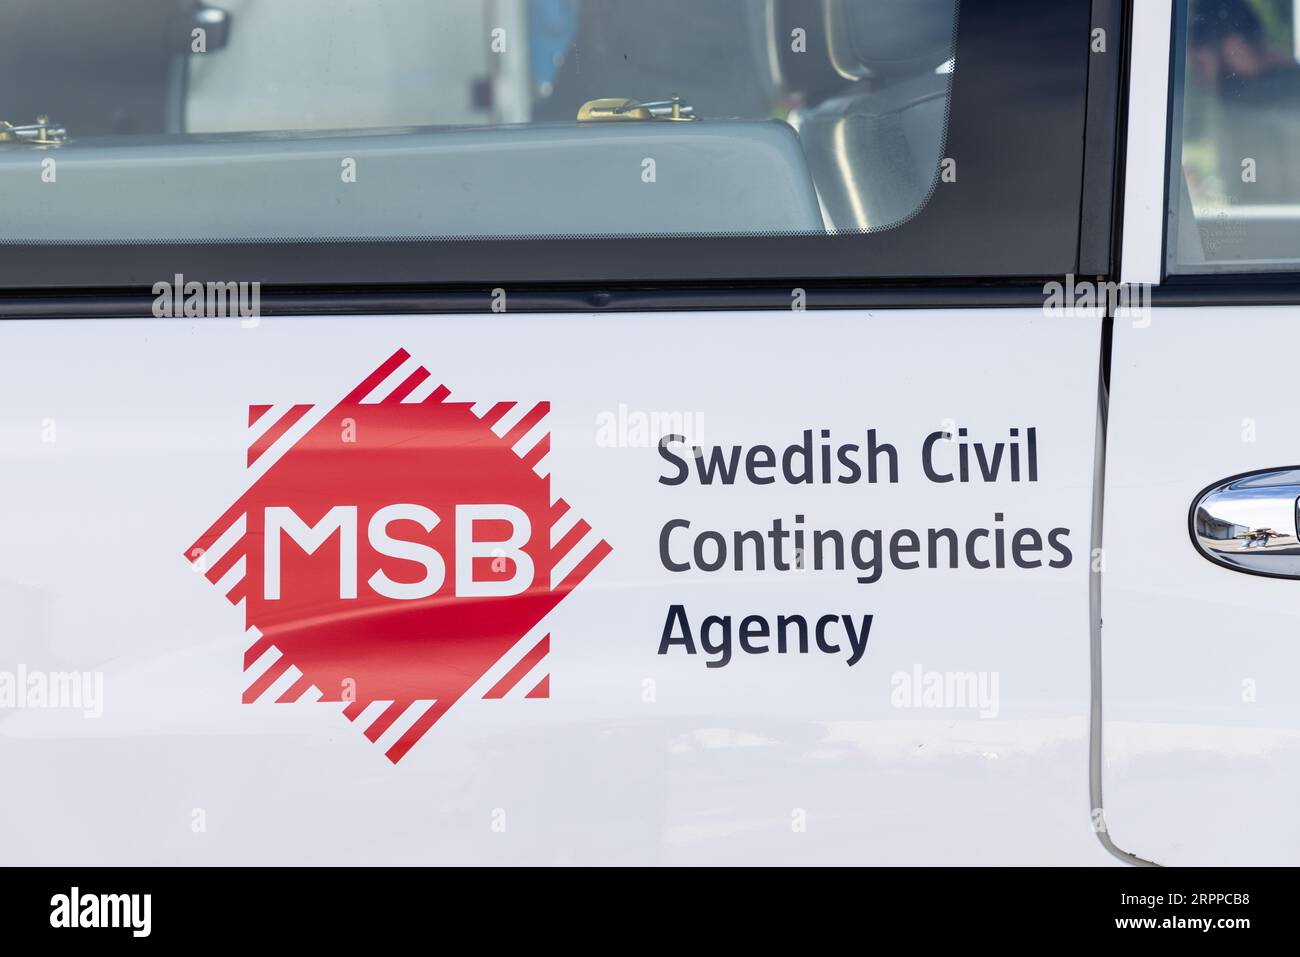 Swedish Civil Contingencies Agency (In swedish MSB, Myndigheten för samhällsskydd och beredskap) at Örebro airport day, Örebro, Sweden. Stock Photo